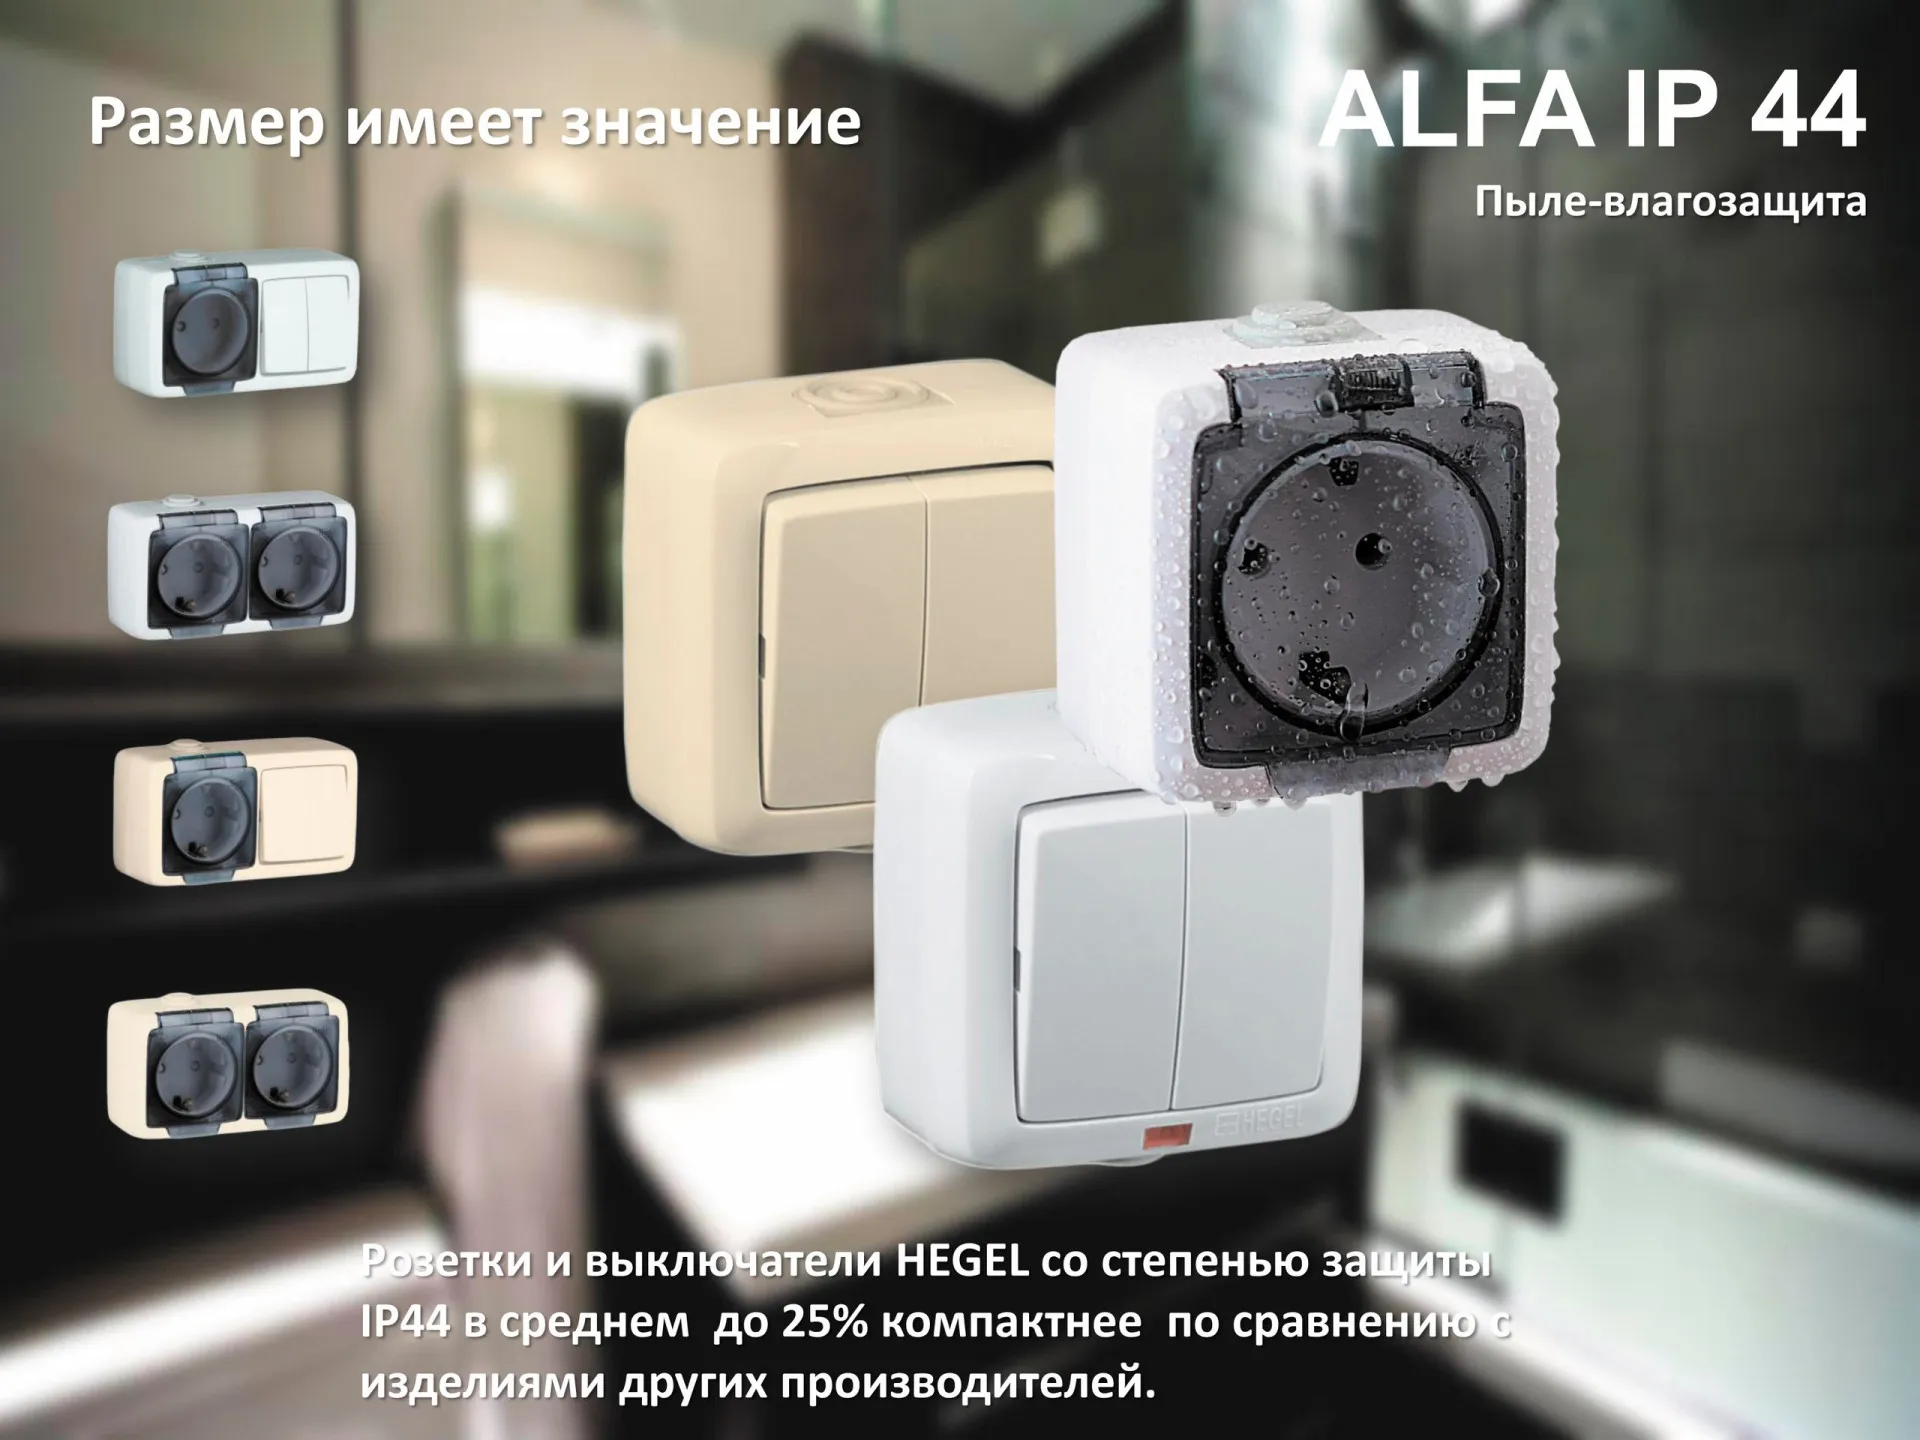 серии пылевлагозащищенных розеток и выключателей открытой установки ALFA IP44#1